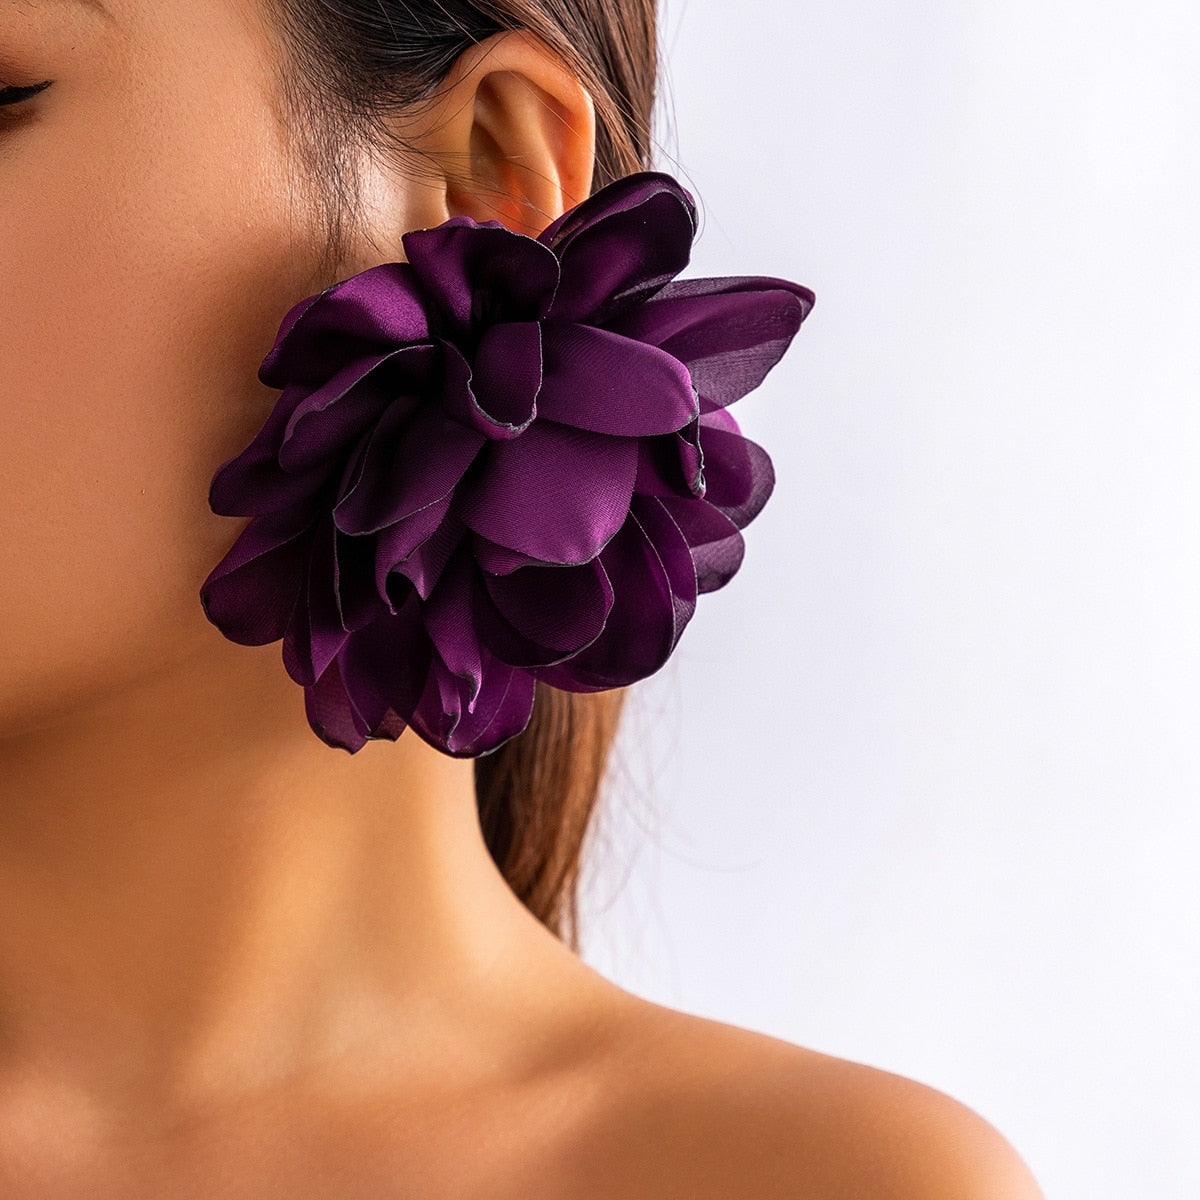 TEEK - Big Fab Flower Earrings JEWELRY theteekdotcom   